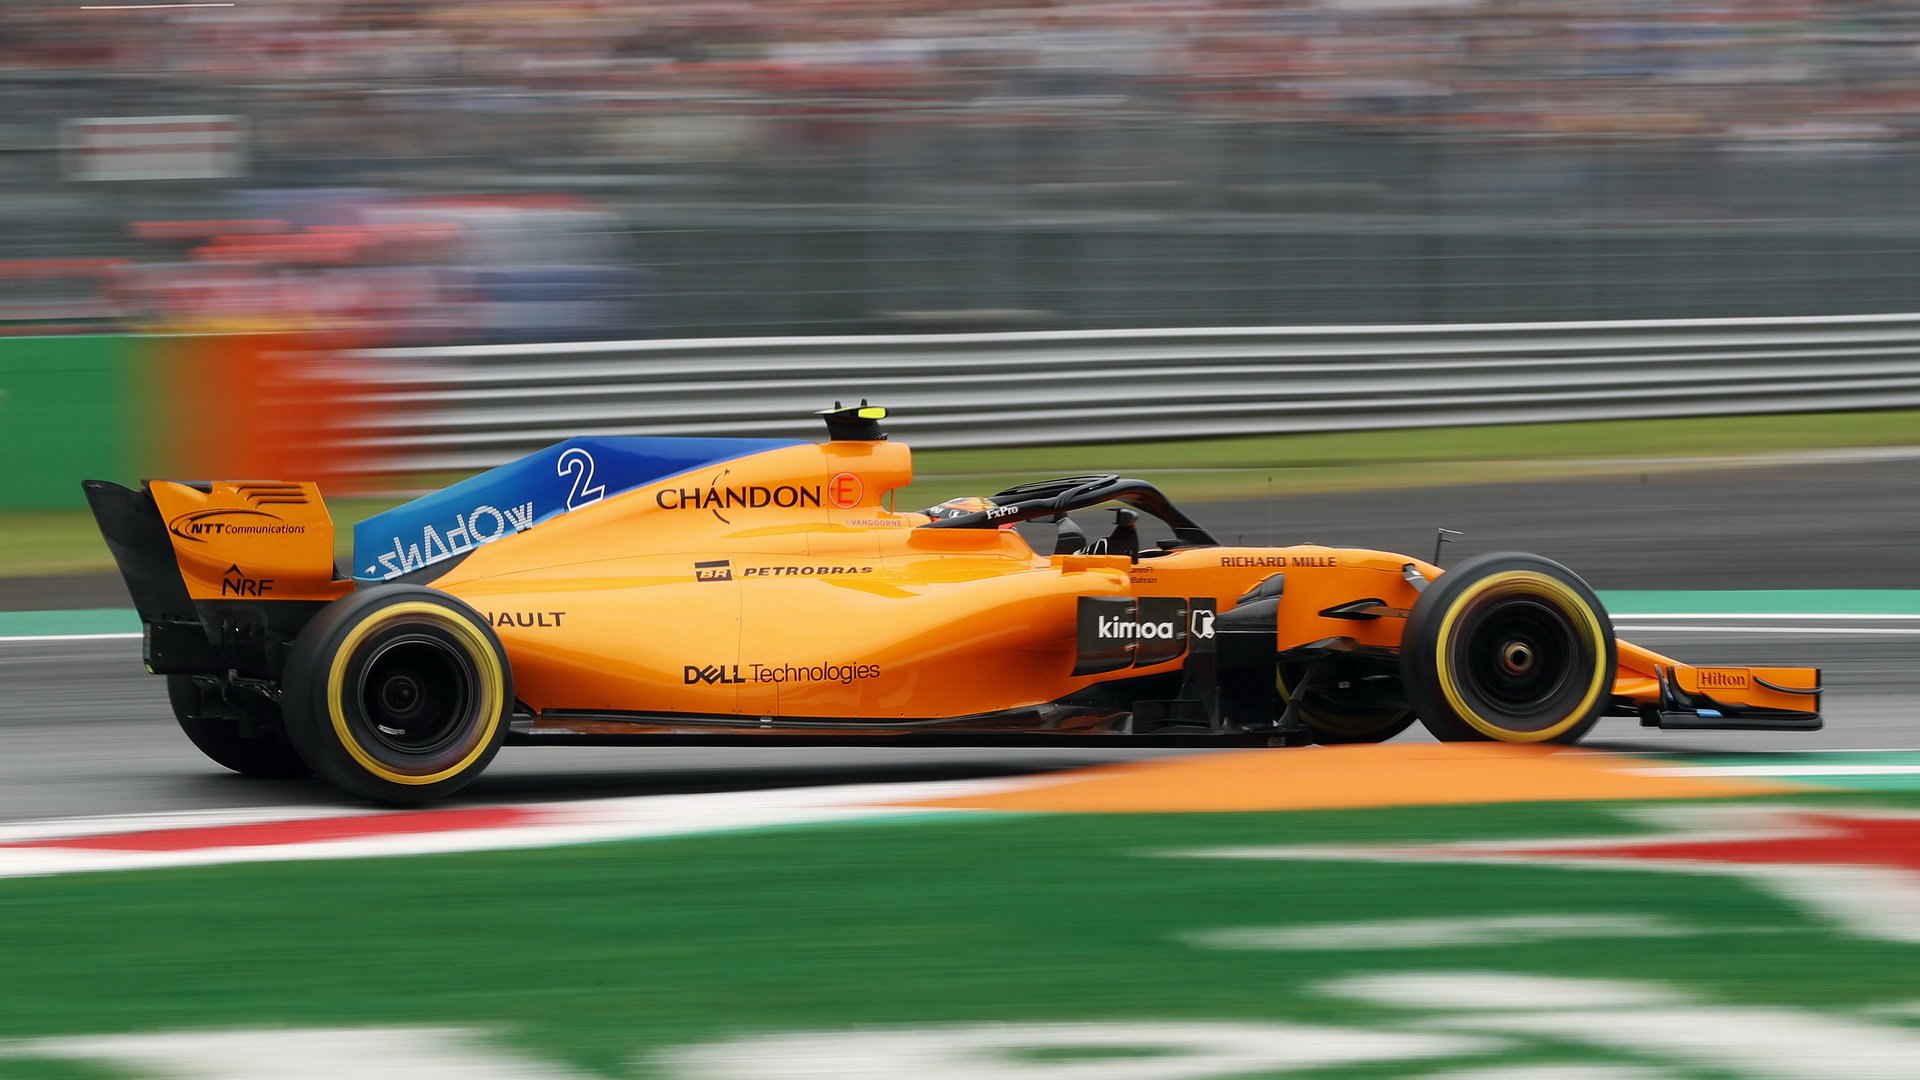 V Belgii ani v Itálii nezískal McLaren ani bod, udrží šesté místo mezi konstruktéry?